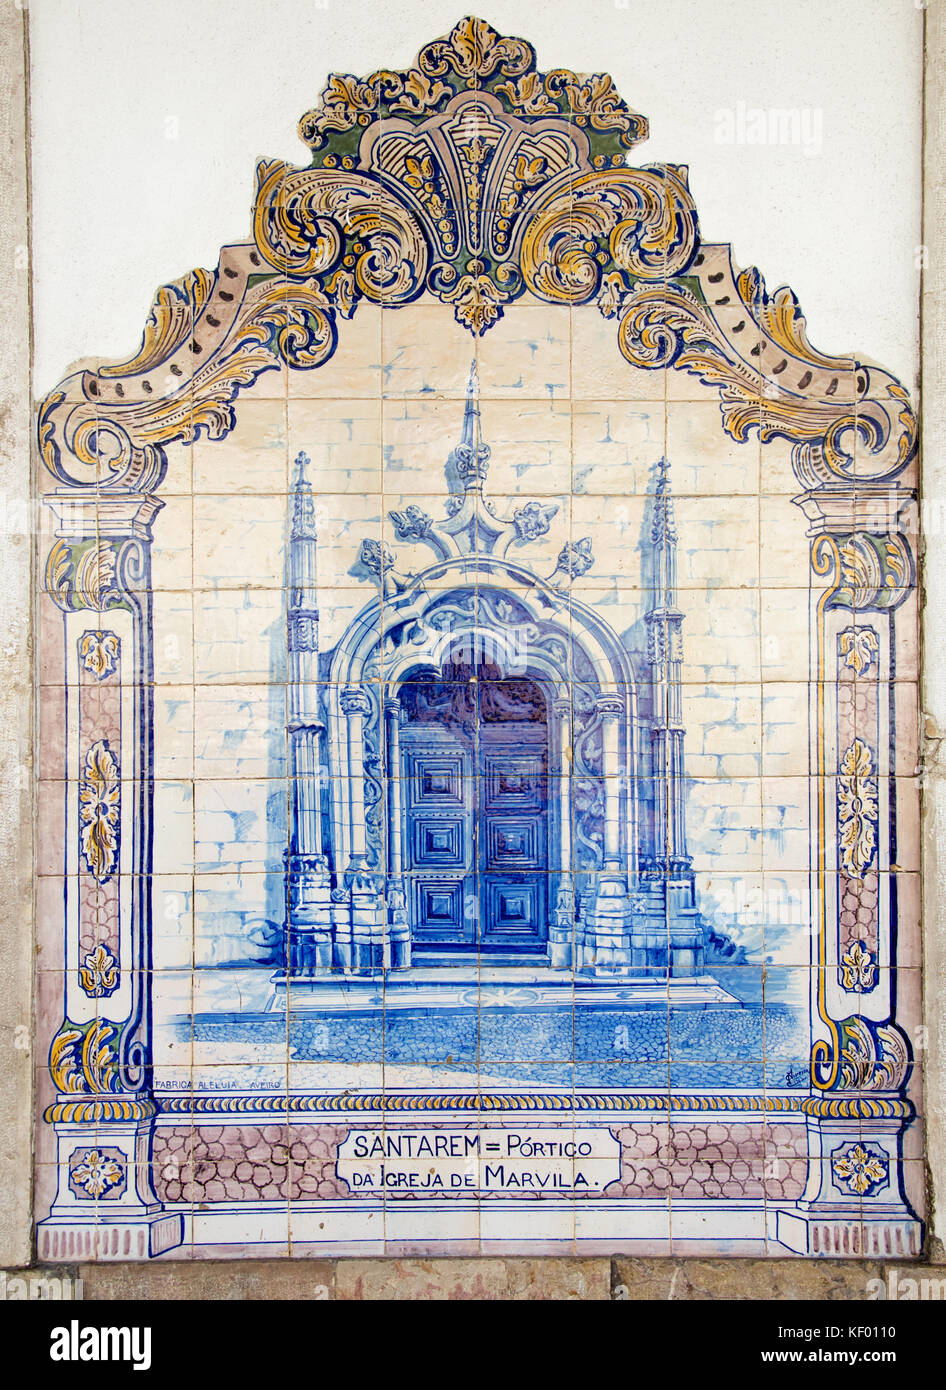 Blue ceramic tiles representing historic Portico da Igreja de Marvila in Santarem, Santarem Railway Station, Portugal Stock Photo